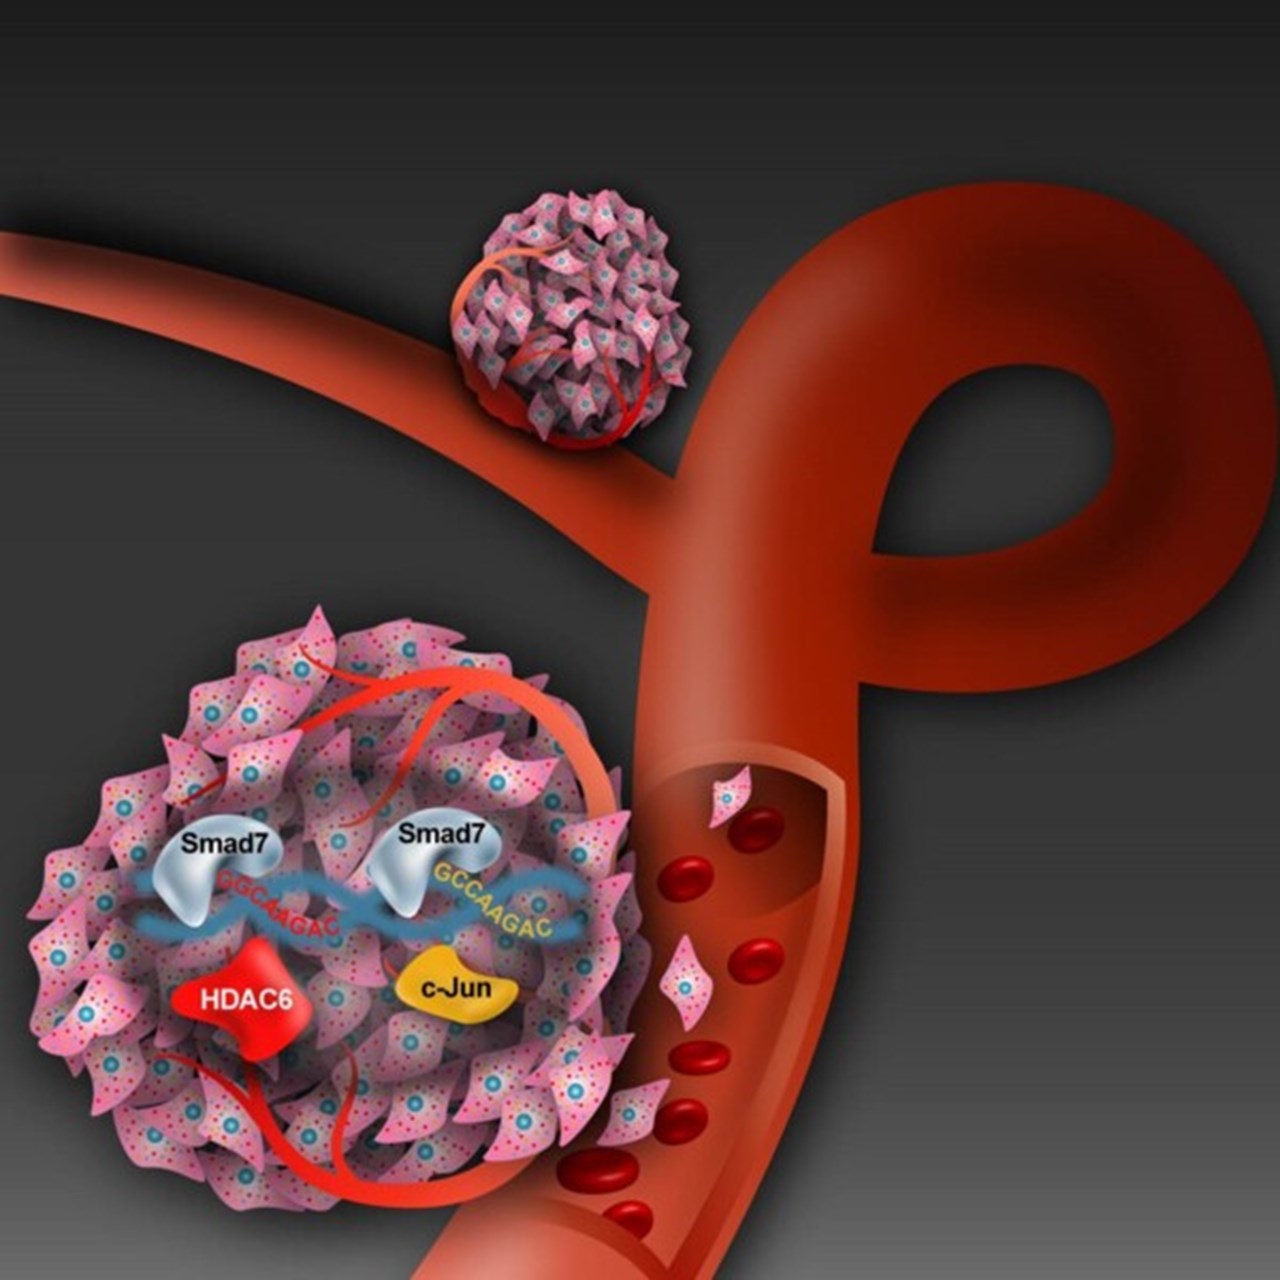 TGF-B-signalkedjan vid spridning av cancerceller